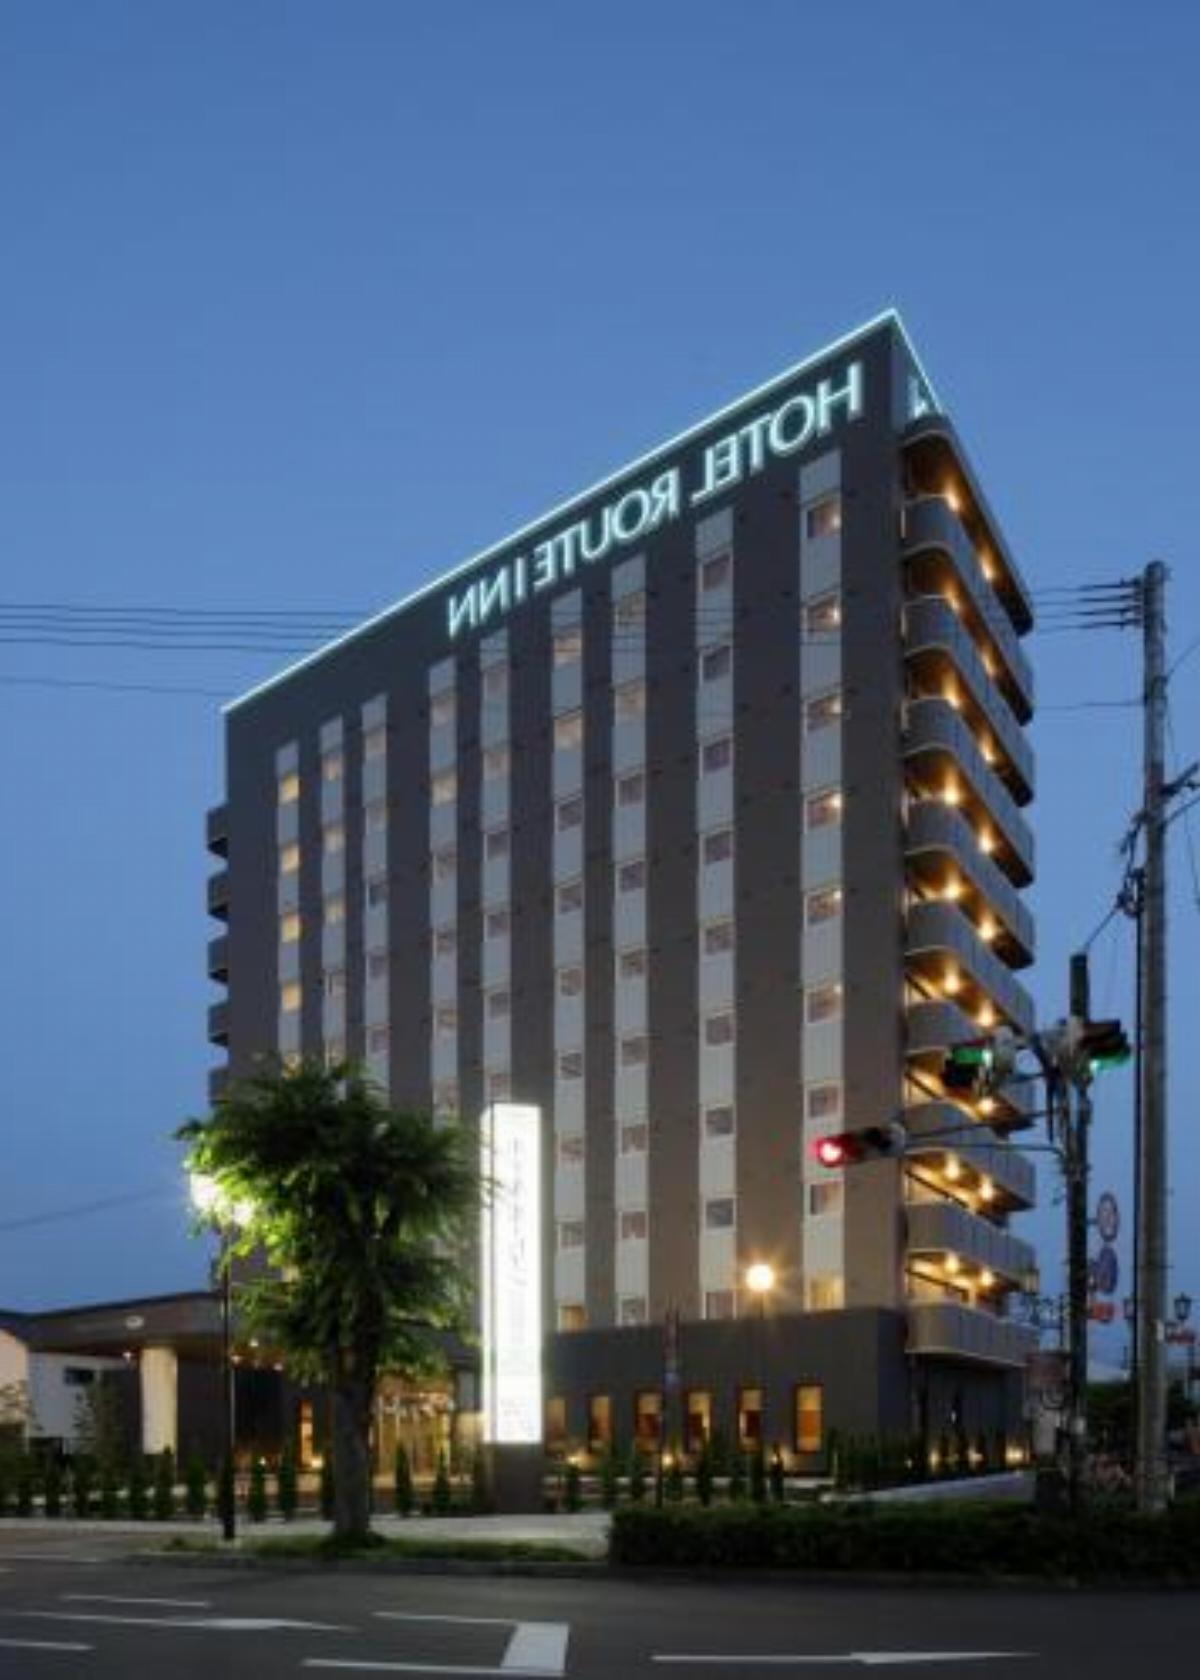 Hotel Route-Inn Hita-Ekimae Hotel Hita Japan